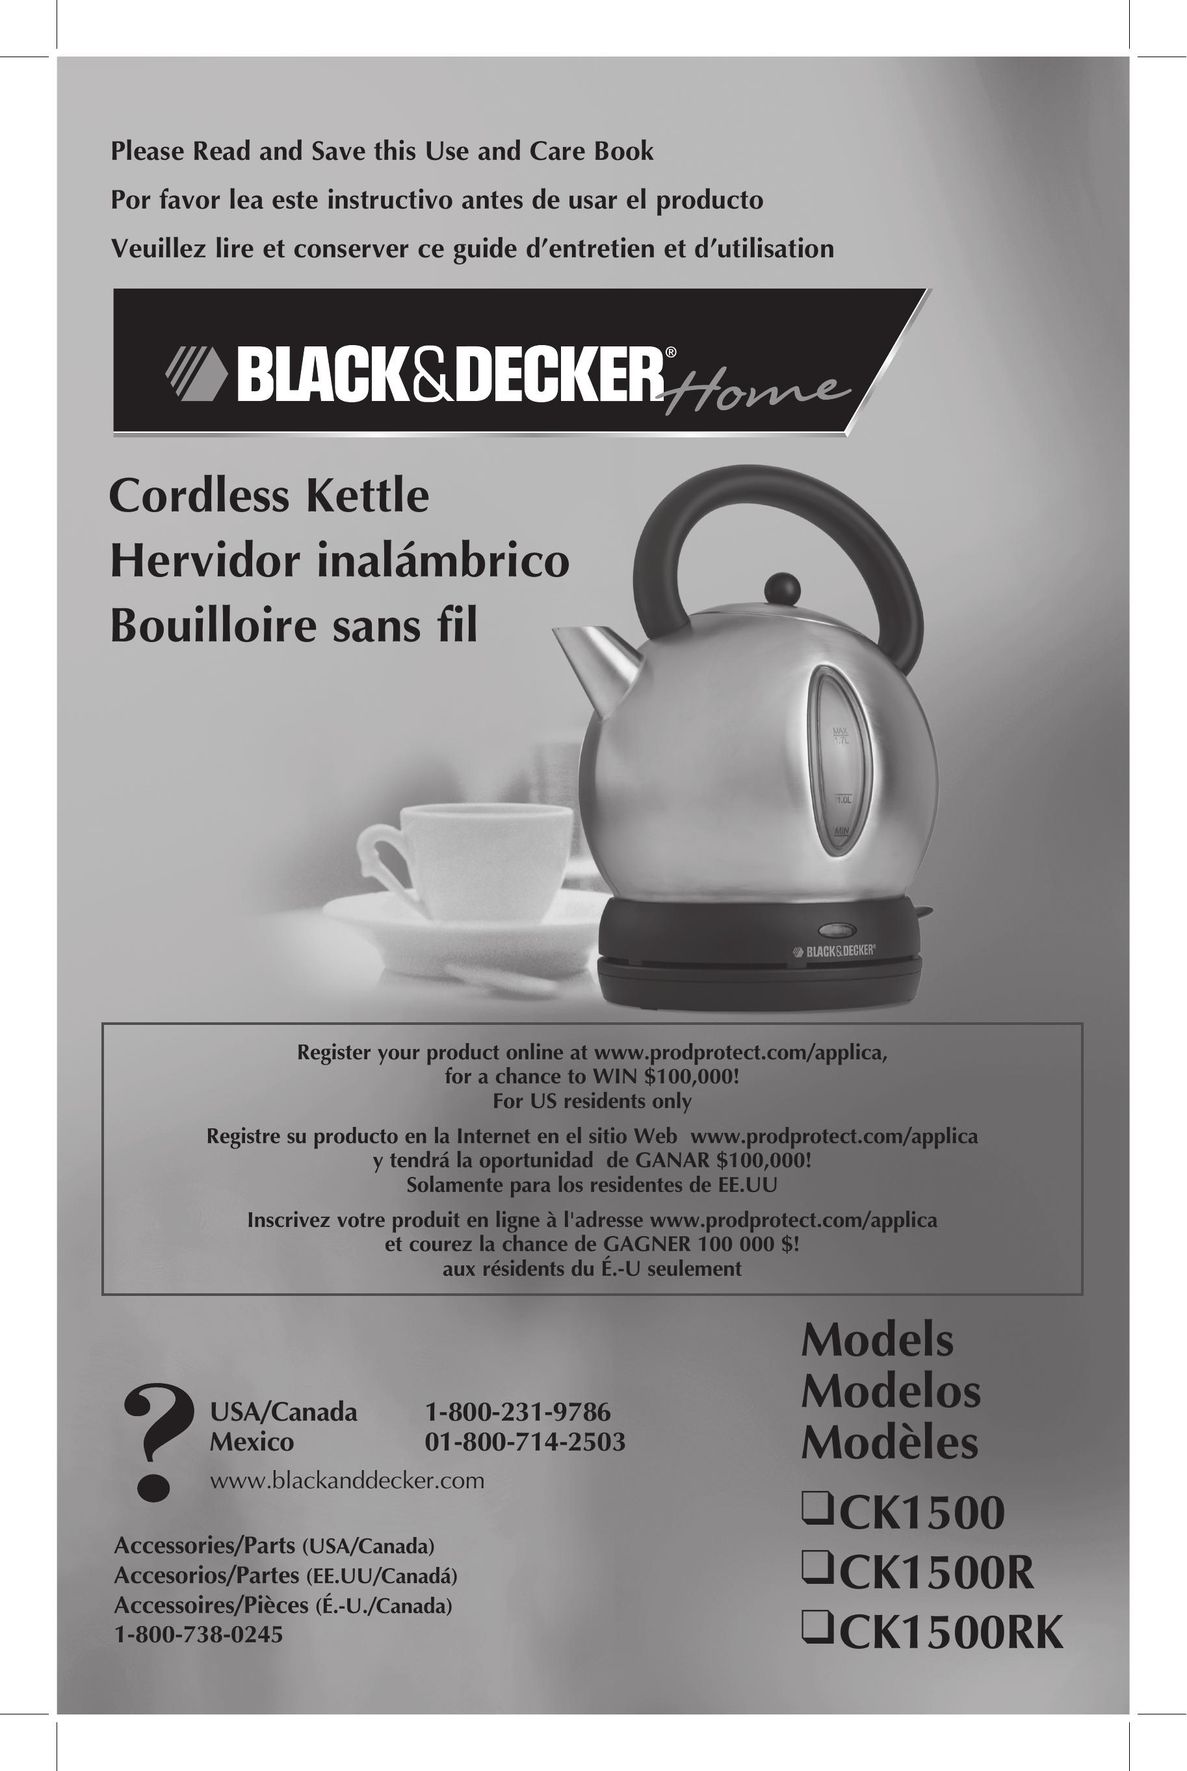 Black & Decker CK1500 Hot Beverage Maker User Manual